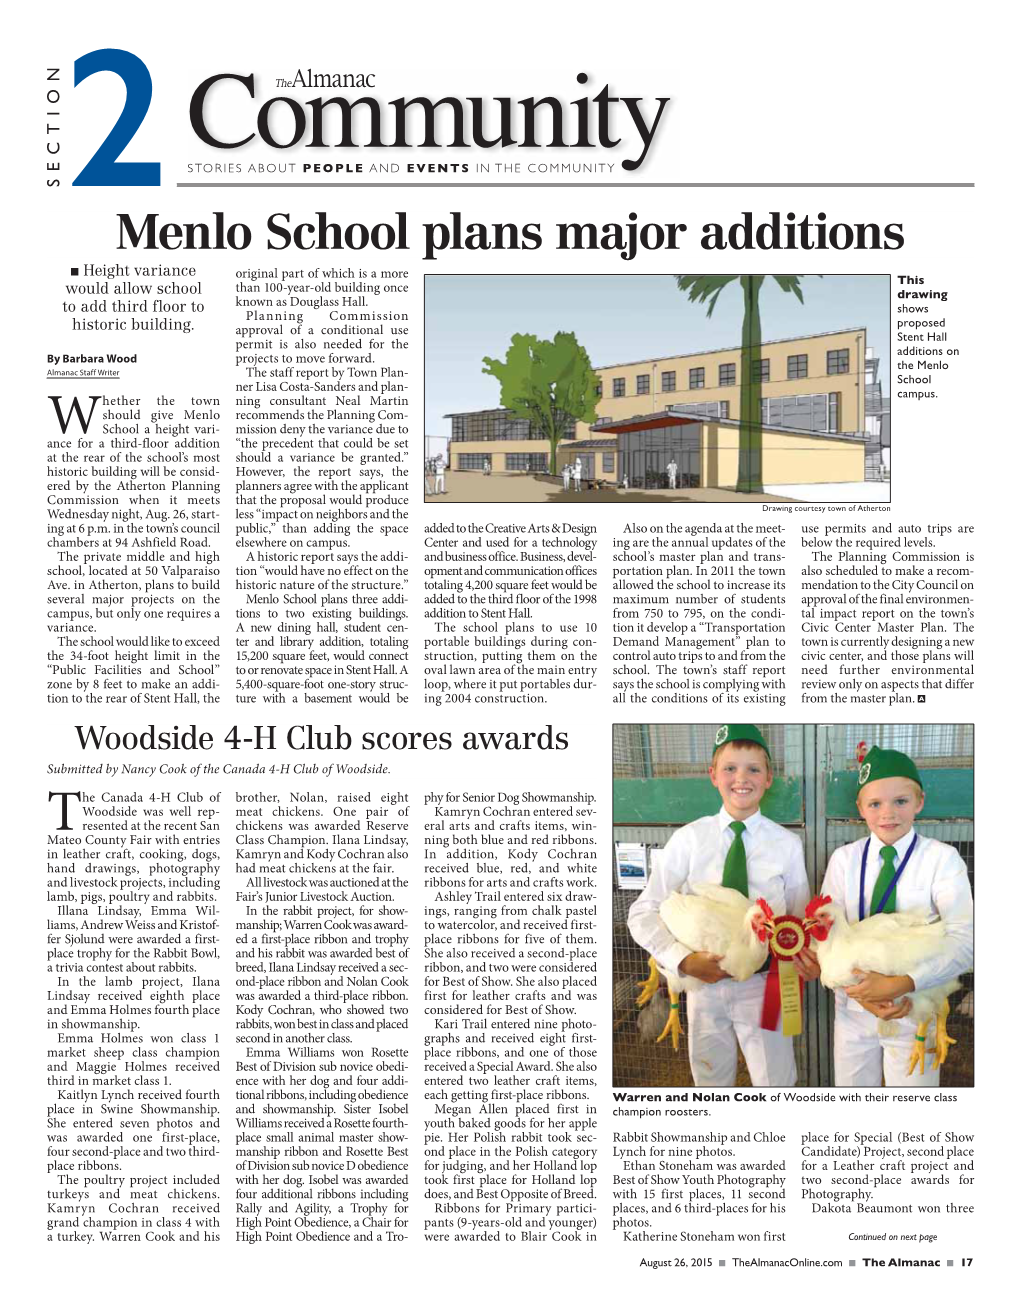 Menlo School Plans Major Additions